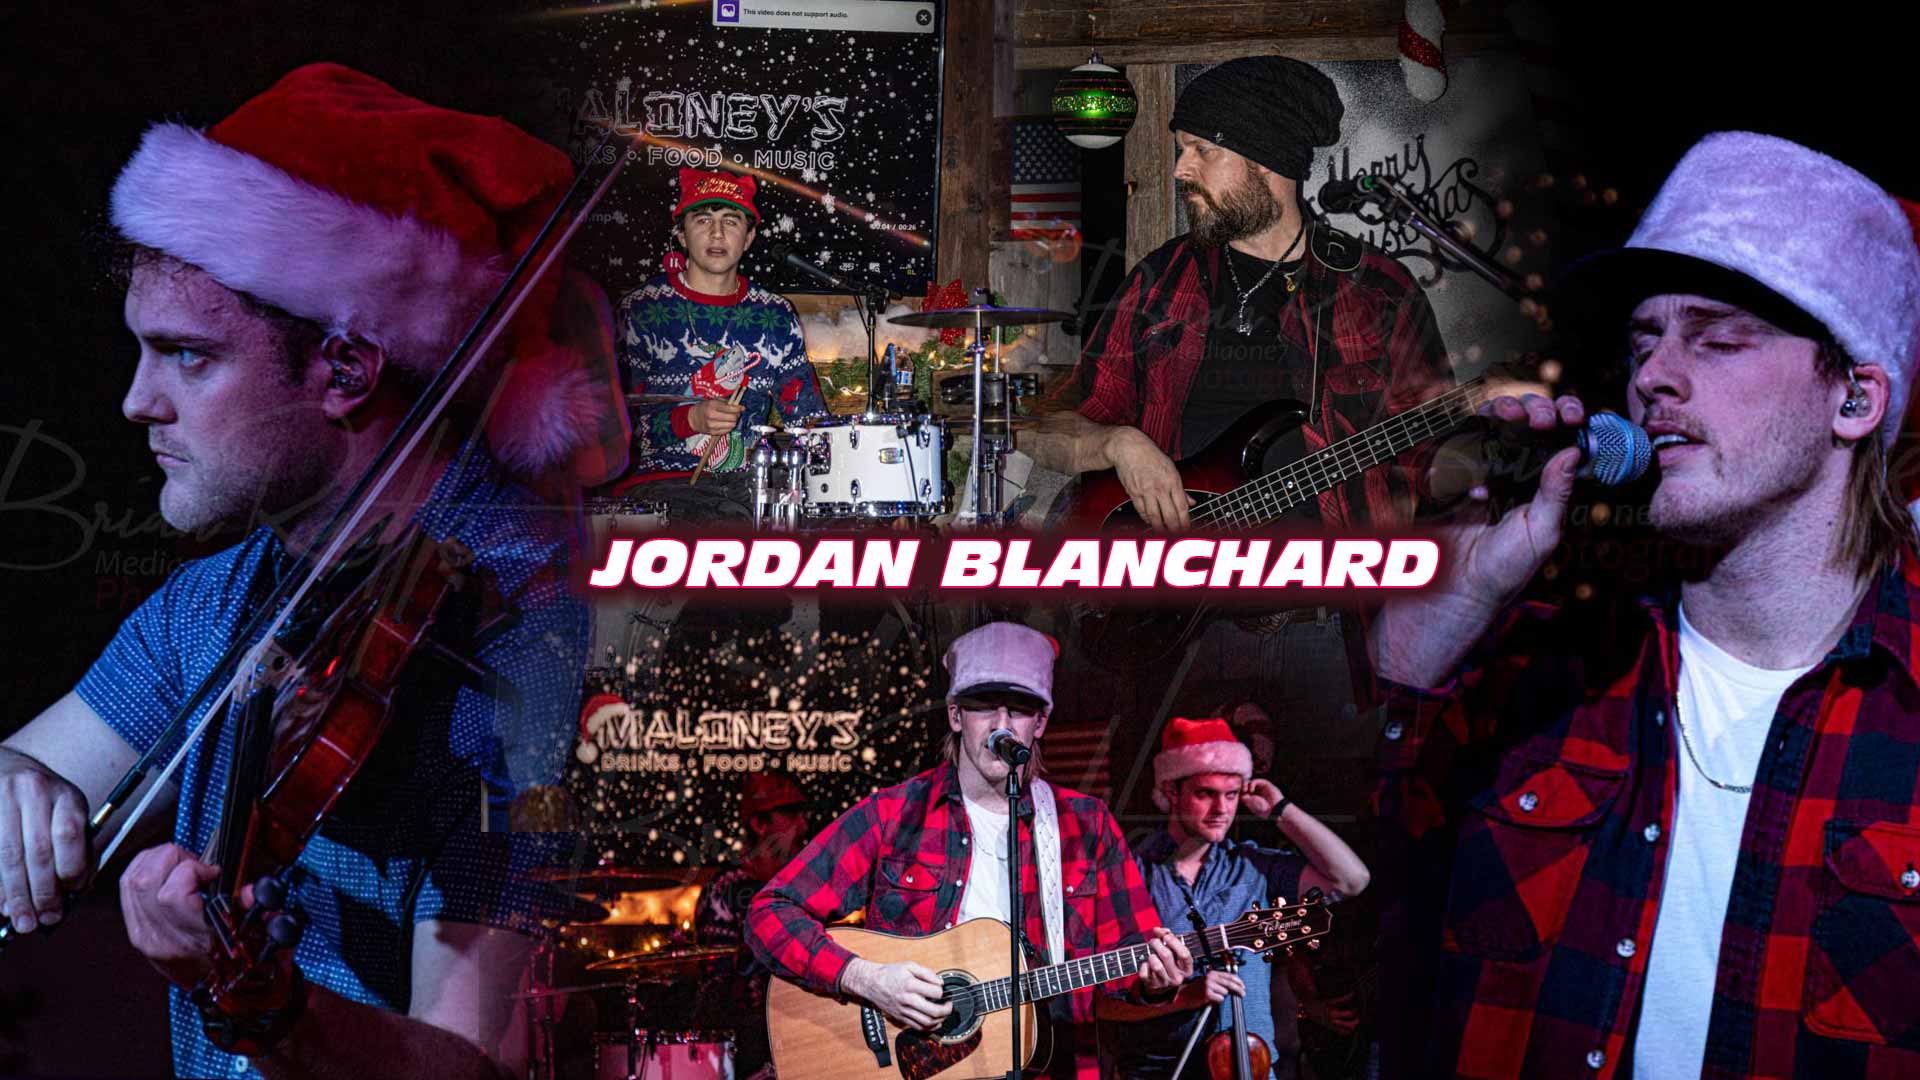 Jordan Blanchard Band at Maloney's